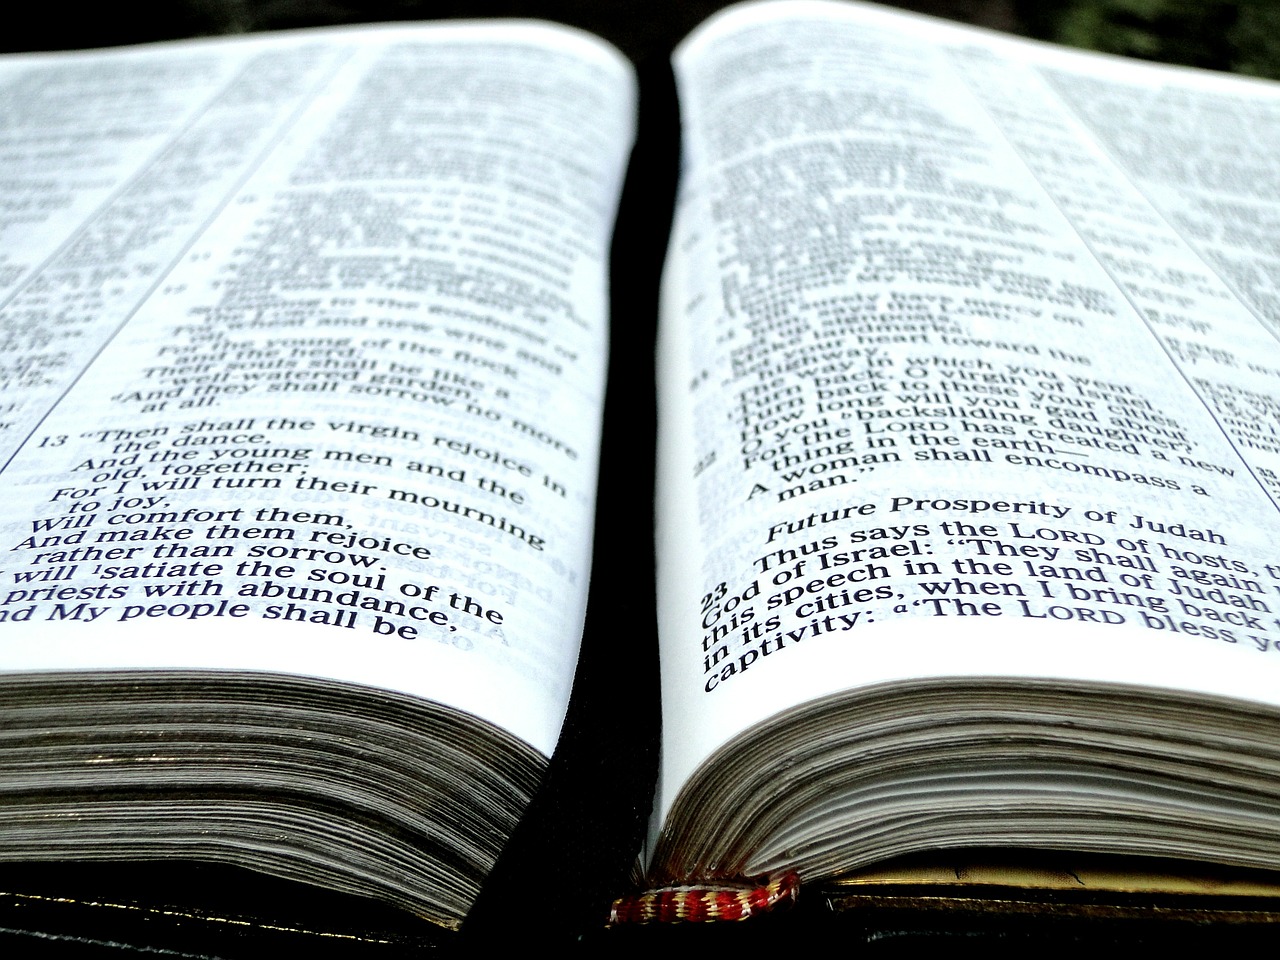 Biblija, Knyga, Atviras, Puslapiai, Eilėraštis, Raštas, Krikščionybė, Tikėjimas, Krikščionis, Skaitymas